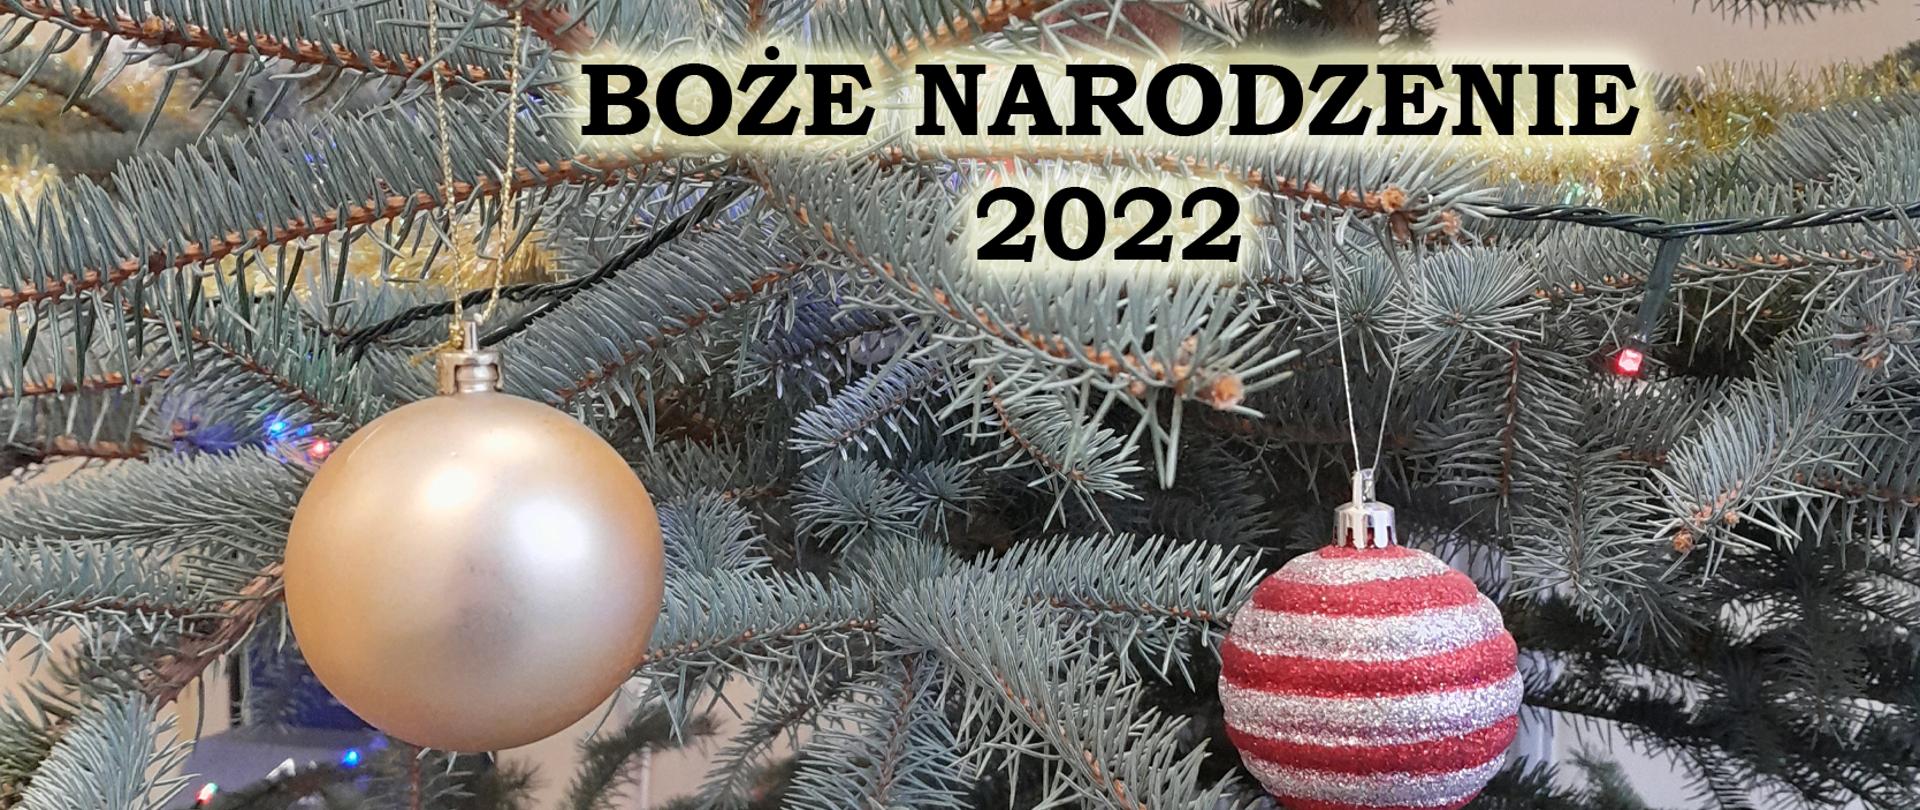 Boże Narodzenie 2022